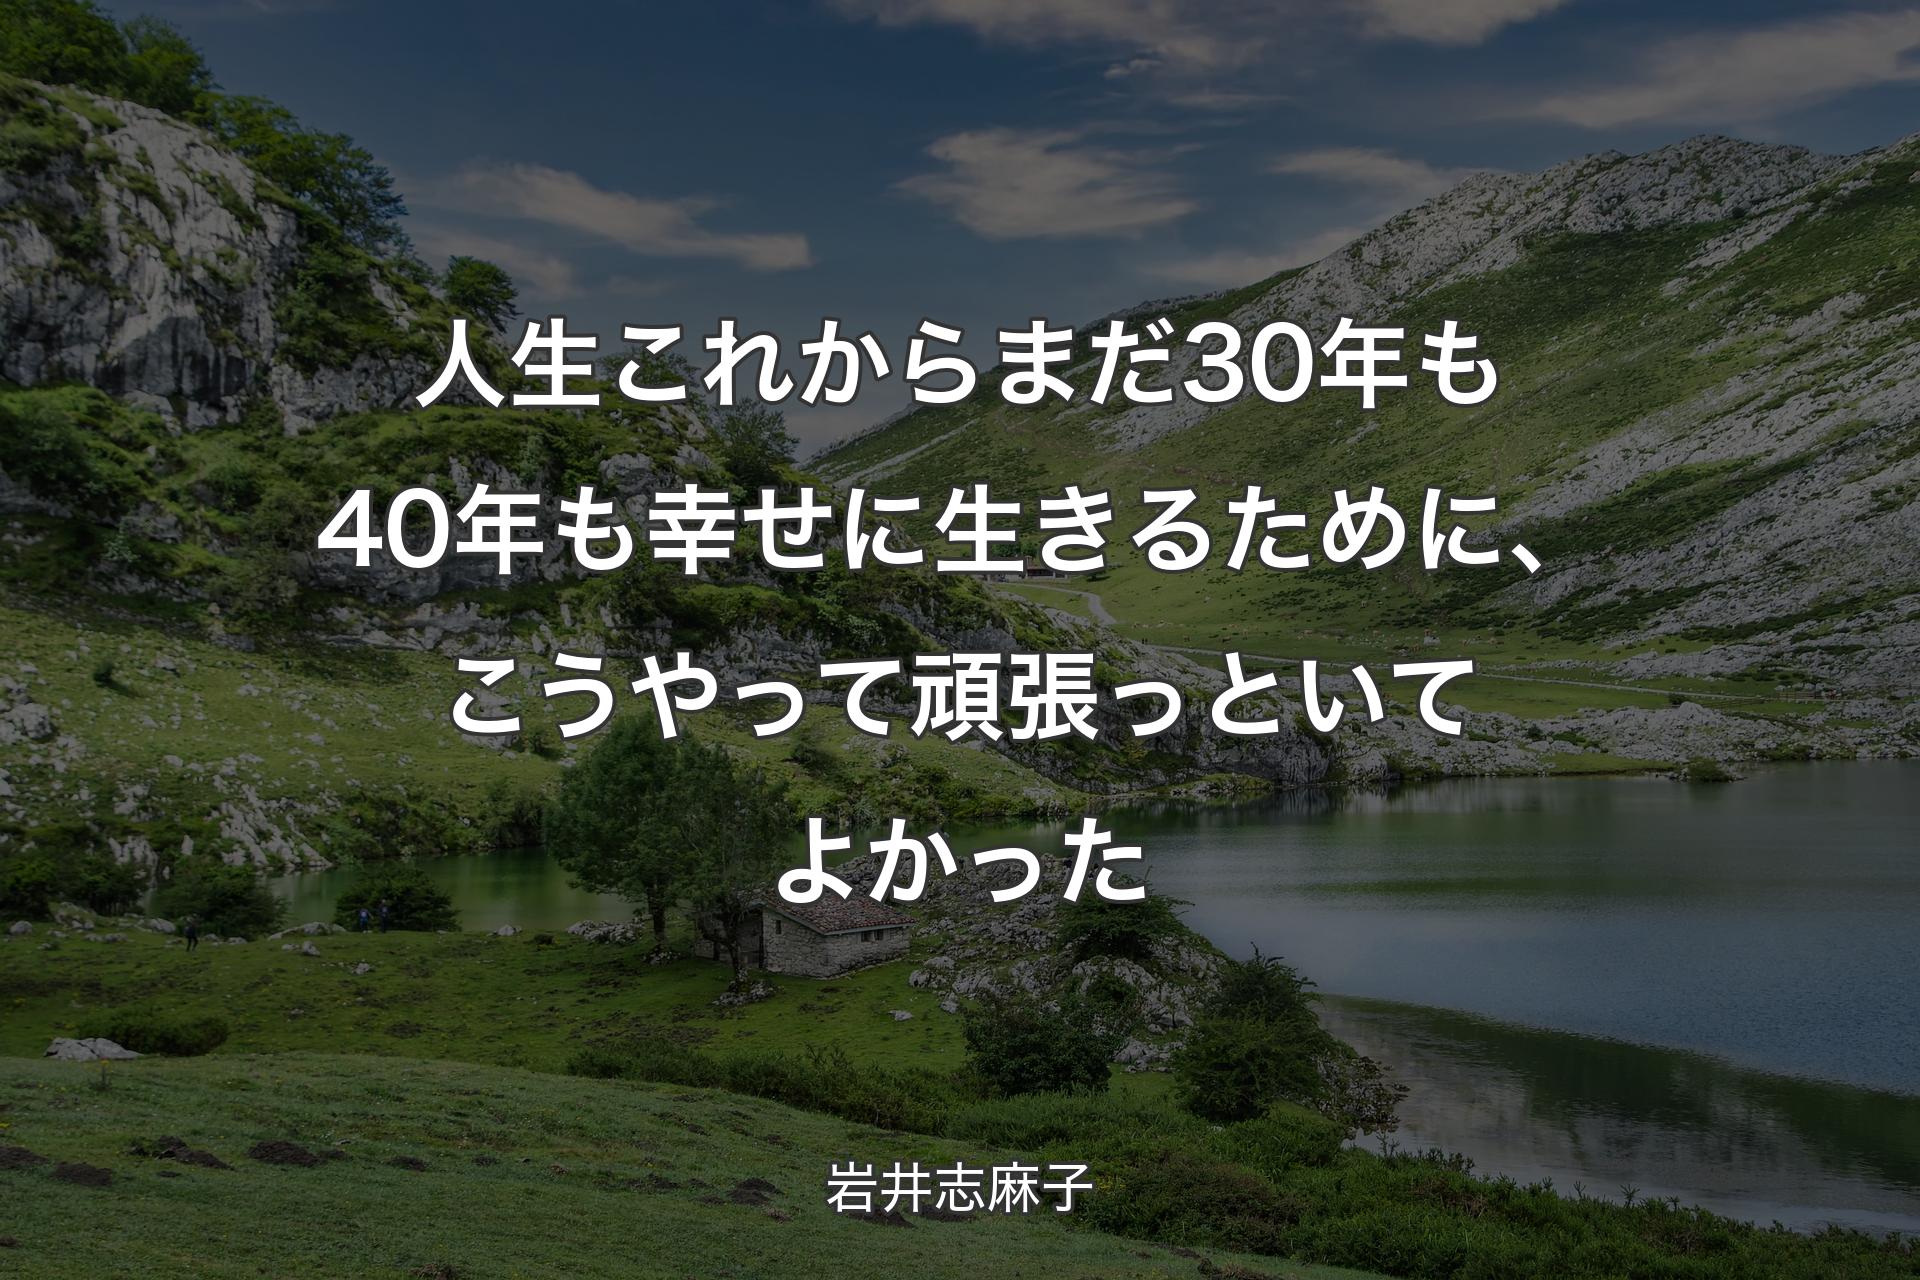 【背景1】人生これからまだ30年も40年も幸せに生きるために、こうやって頑張っといてよかった - 岩井志麻子